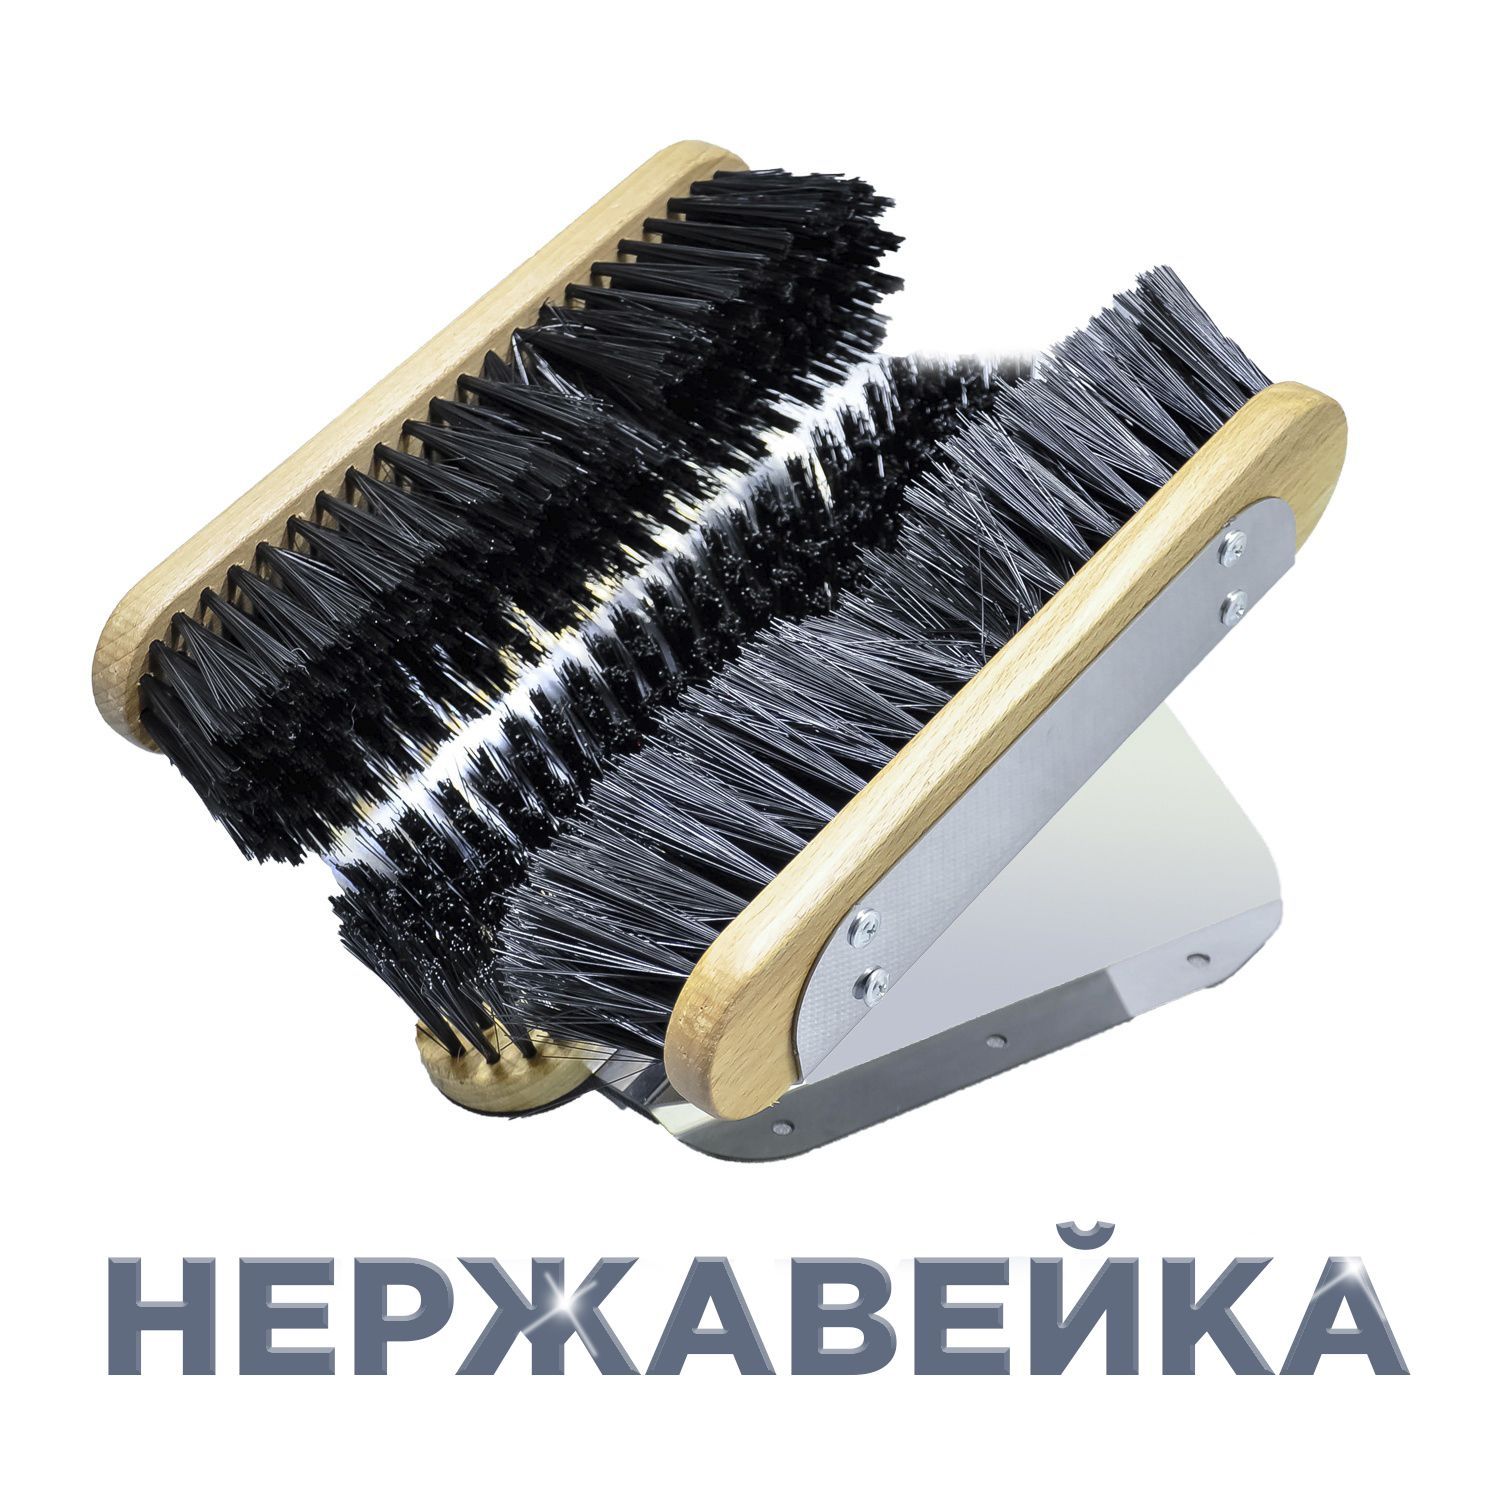 Напольная/уличная щётка для обуви купить за рублей оптом, недорого - B2BTRADE